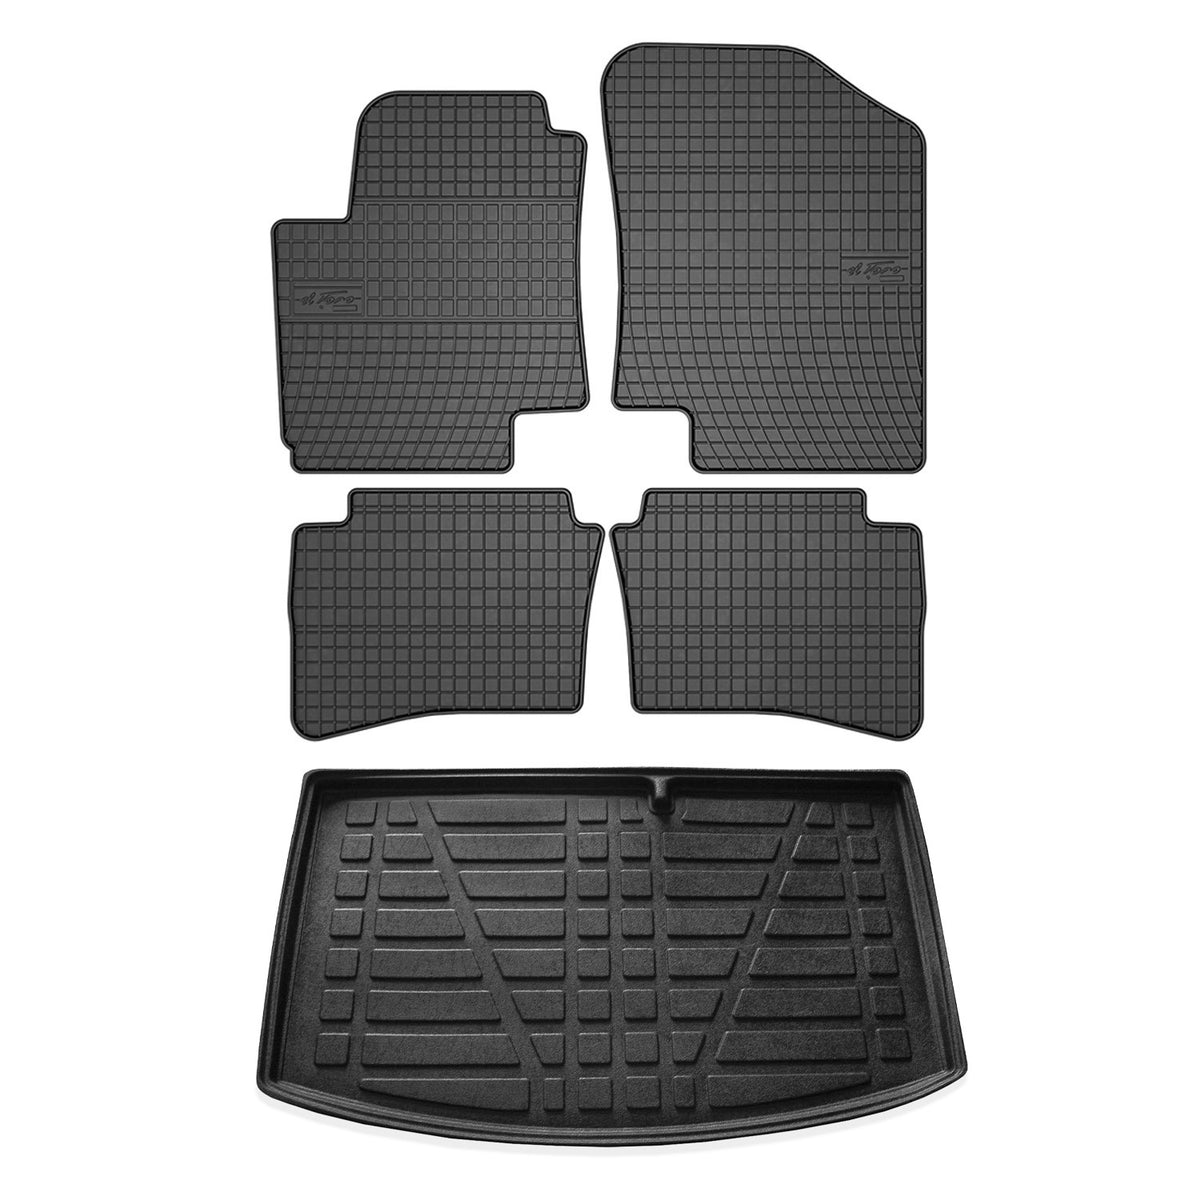 Fußmatten & Kofferraumwanne Set für Hyundai i20 Schrägheck 2008-2014 Gummi 5x